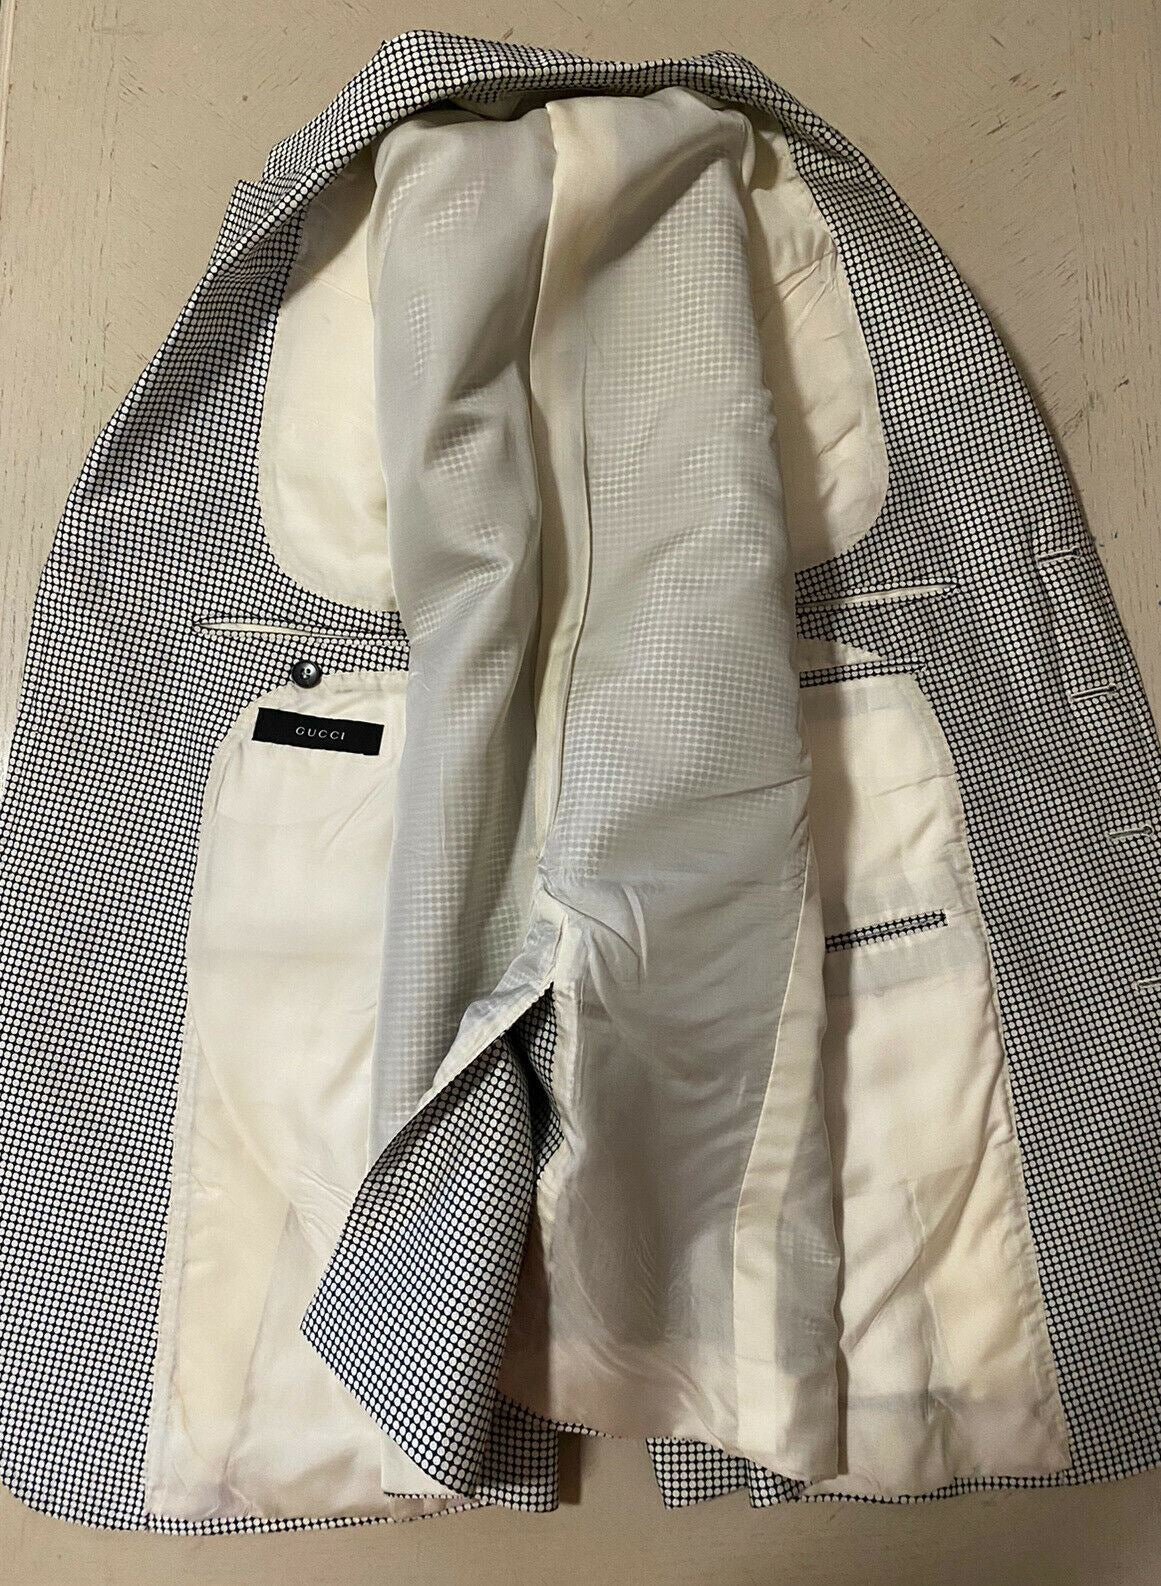 Мужской костюм приталенного силуэта Gucci Tom Ford, белый/черный, белый/черный, $5400, 42R, США (52R, ЕС)